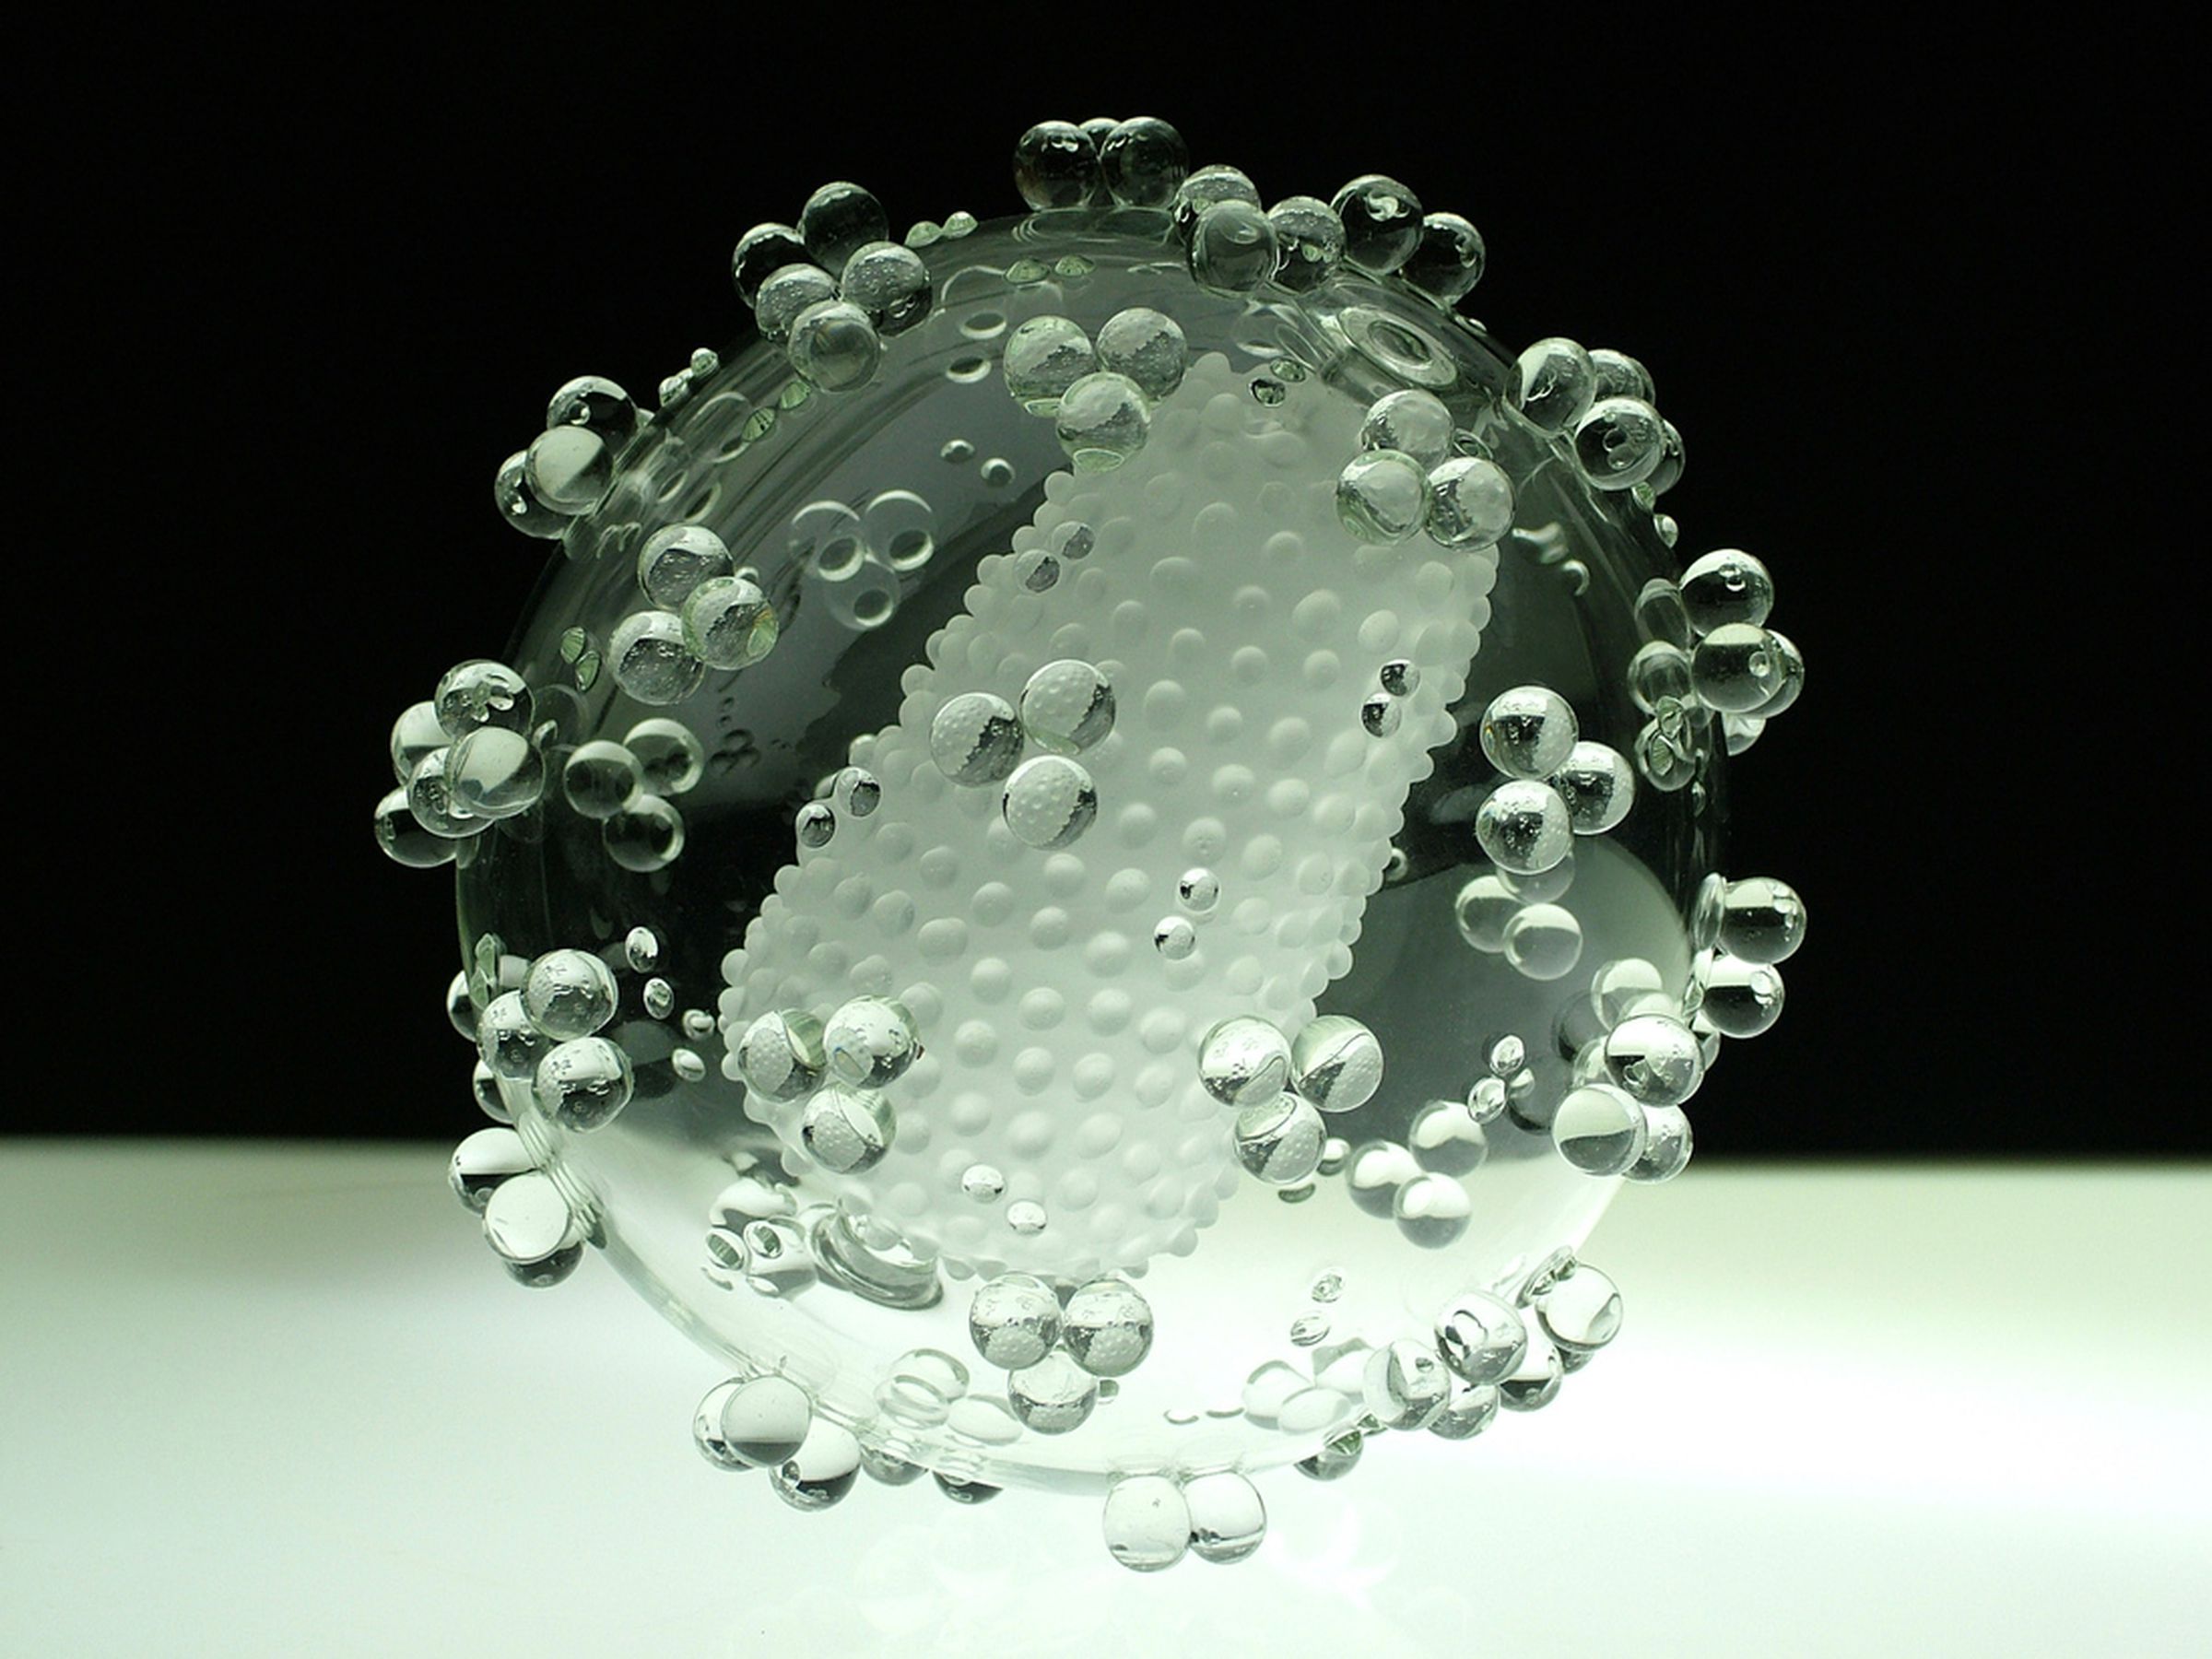 Luke Jerram 'Glass Microbiology' photos